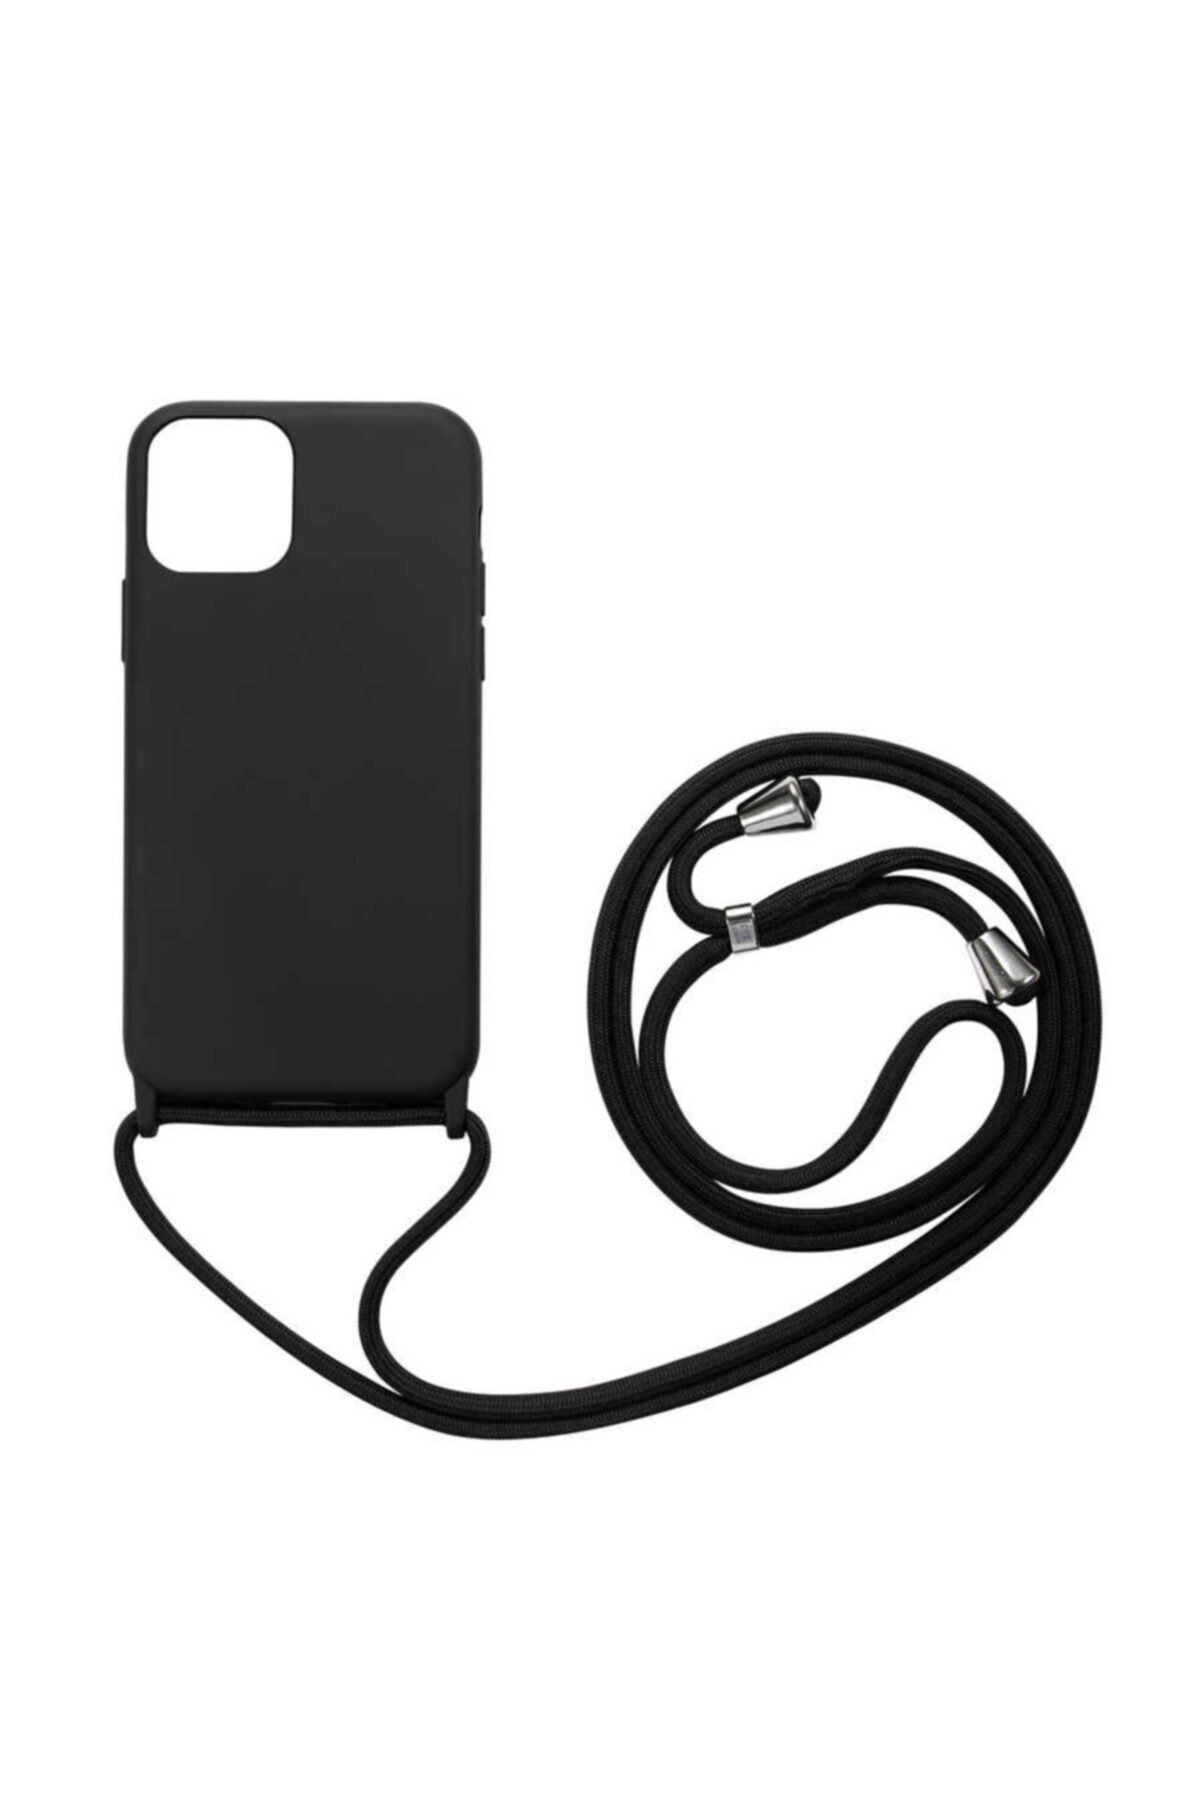 CaseStreet Case Street Apple Iphone 12 Pro Max Kılıf Askılı Içi Süet Lansman Görünüm Silikon Siyah